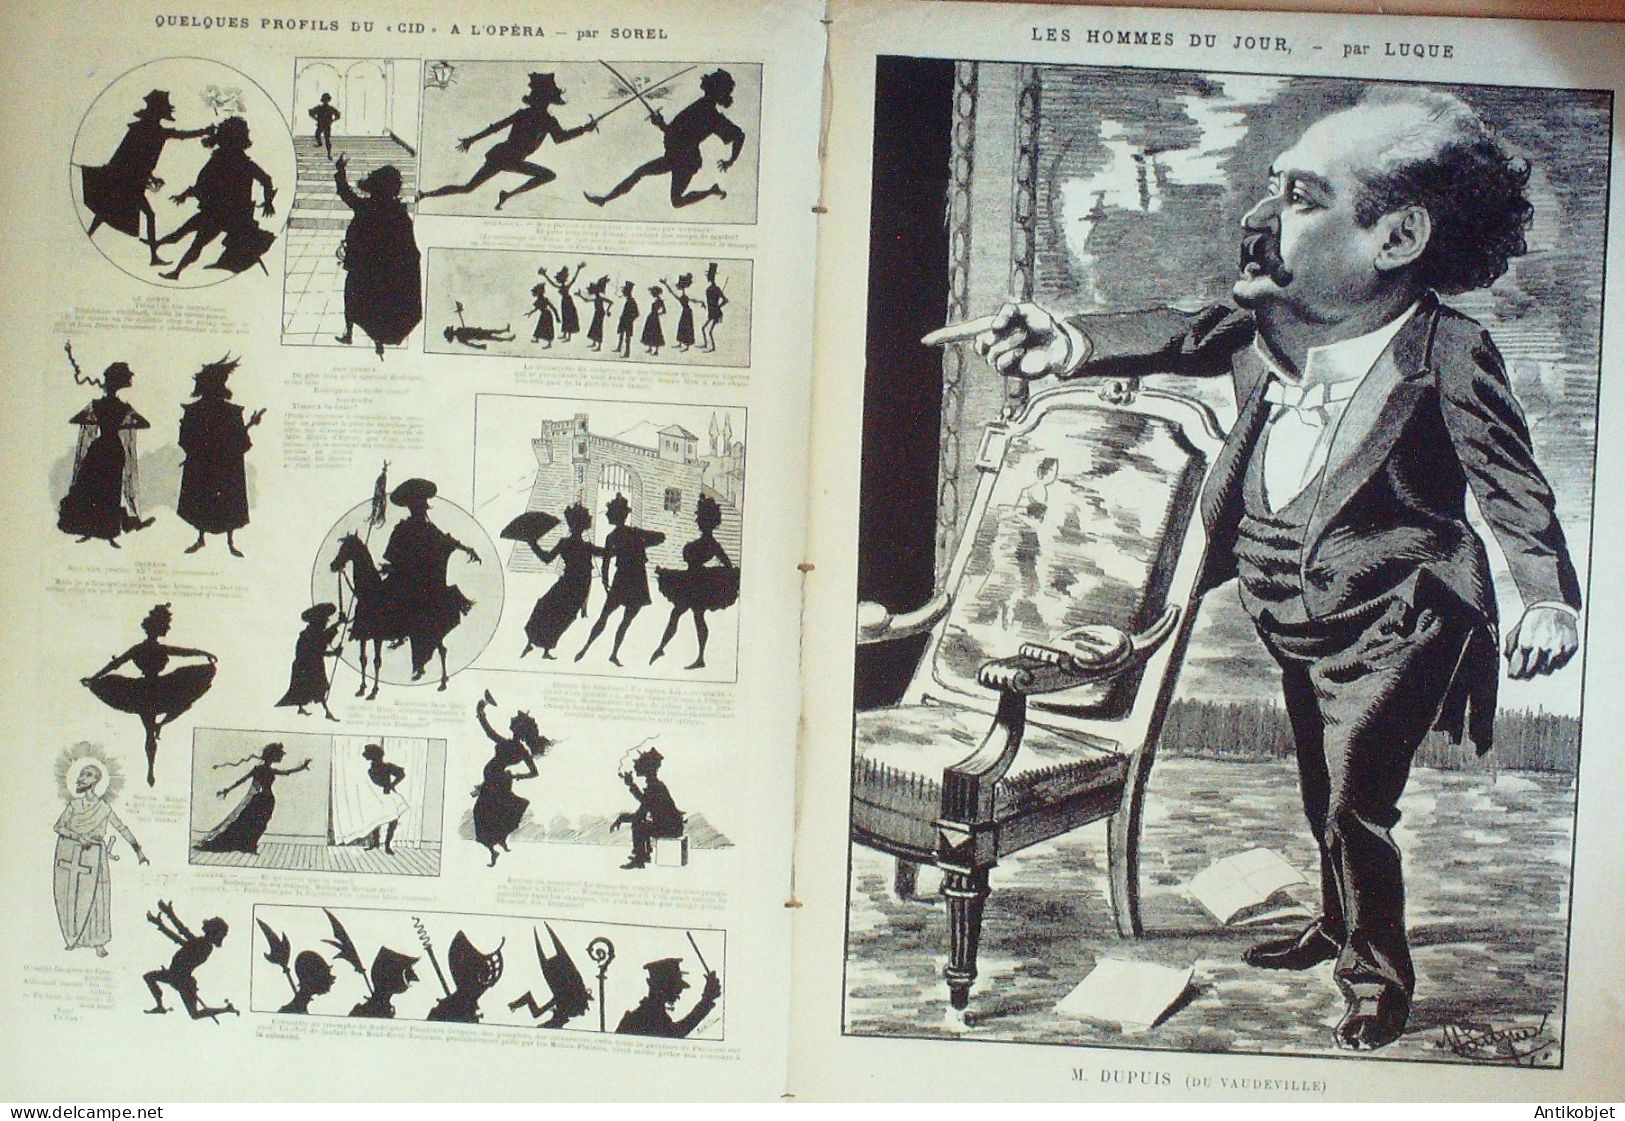 La Caricature 1886 N°318 En Mer Tiret-Bognet Octave Uzanne Dupuis Par Luque Sorel Robida - Zeitschriften - Vor 1900